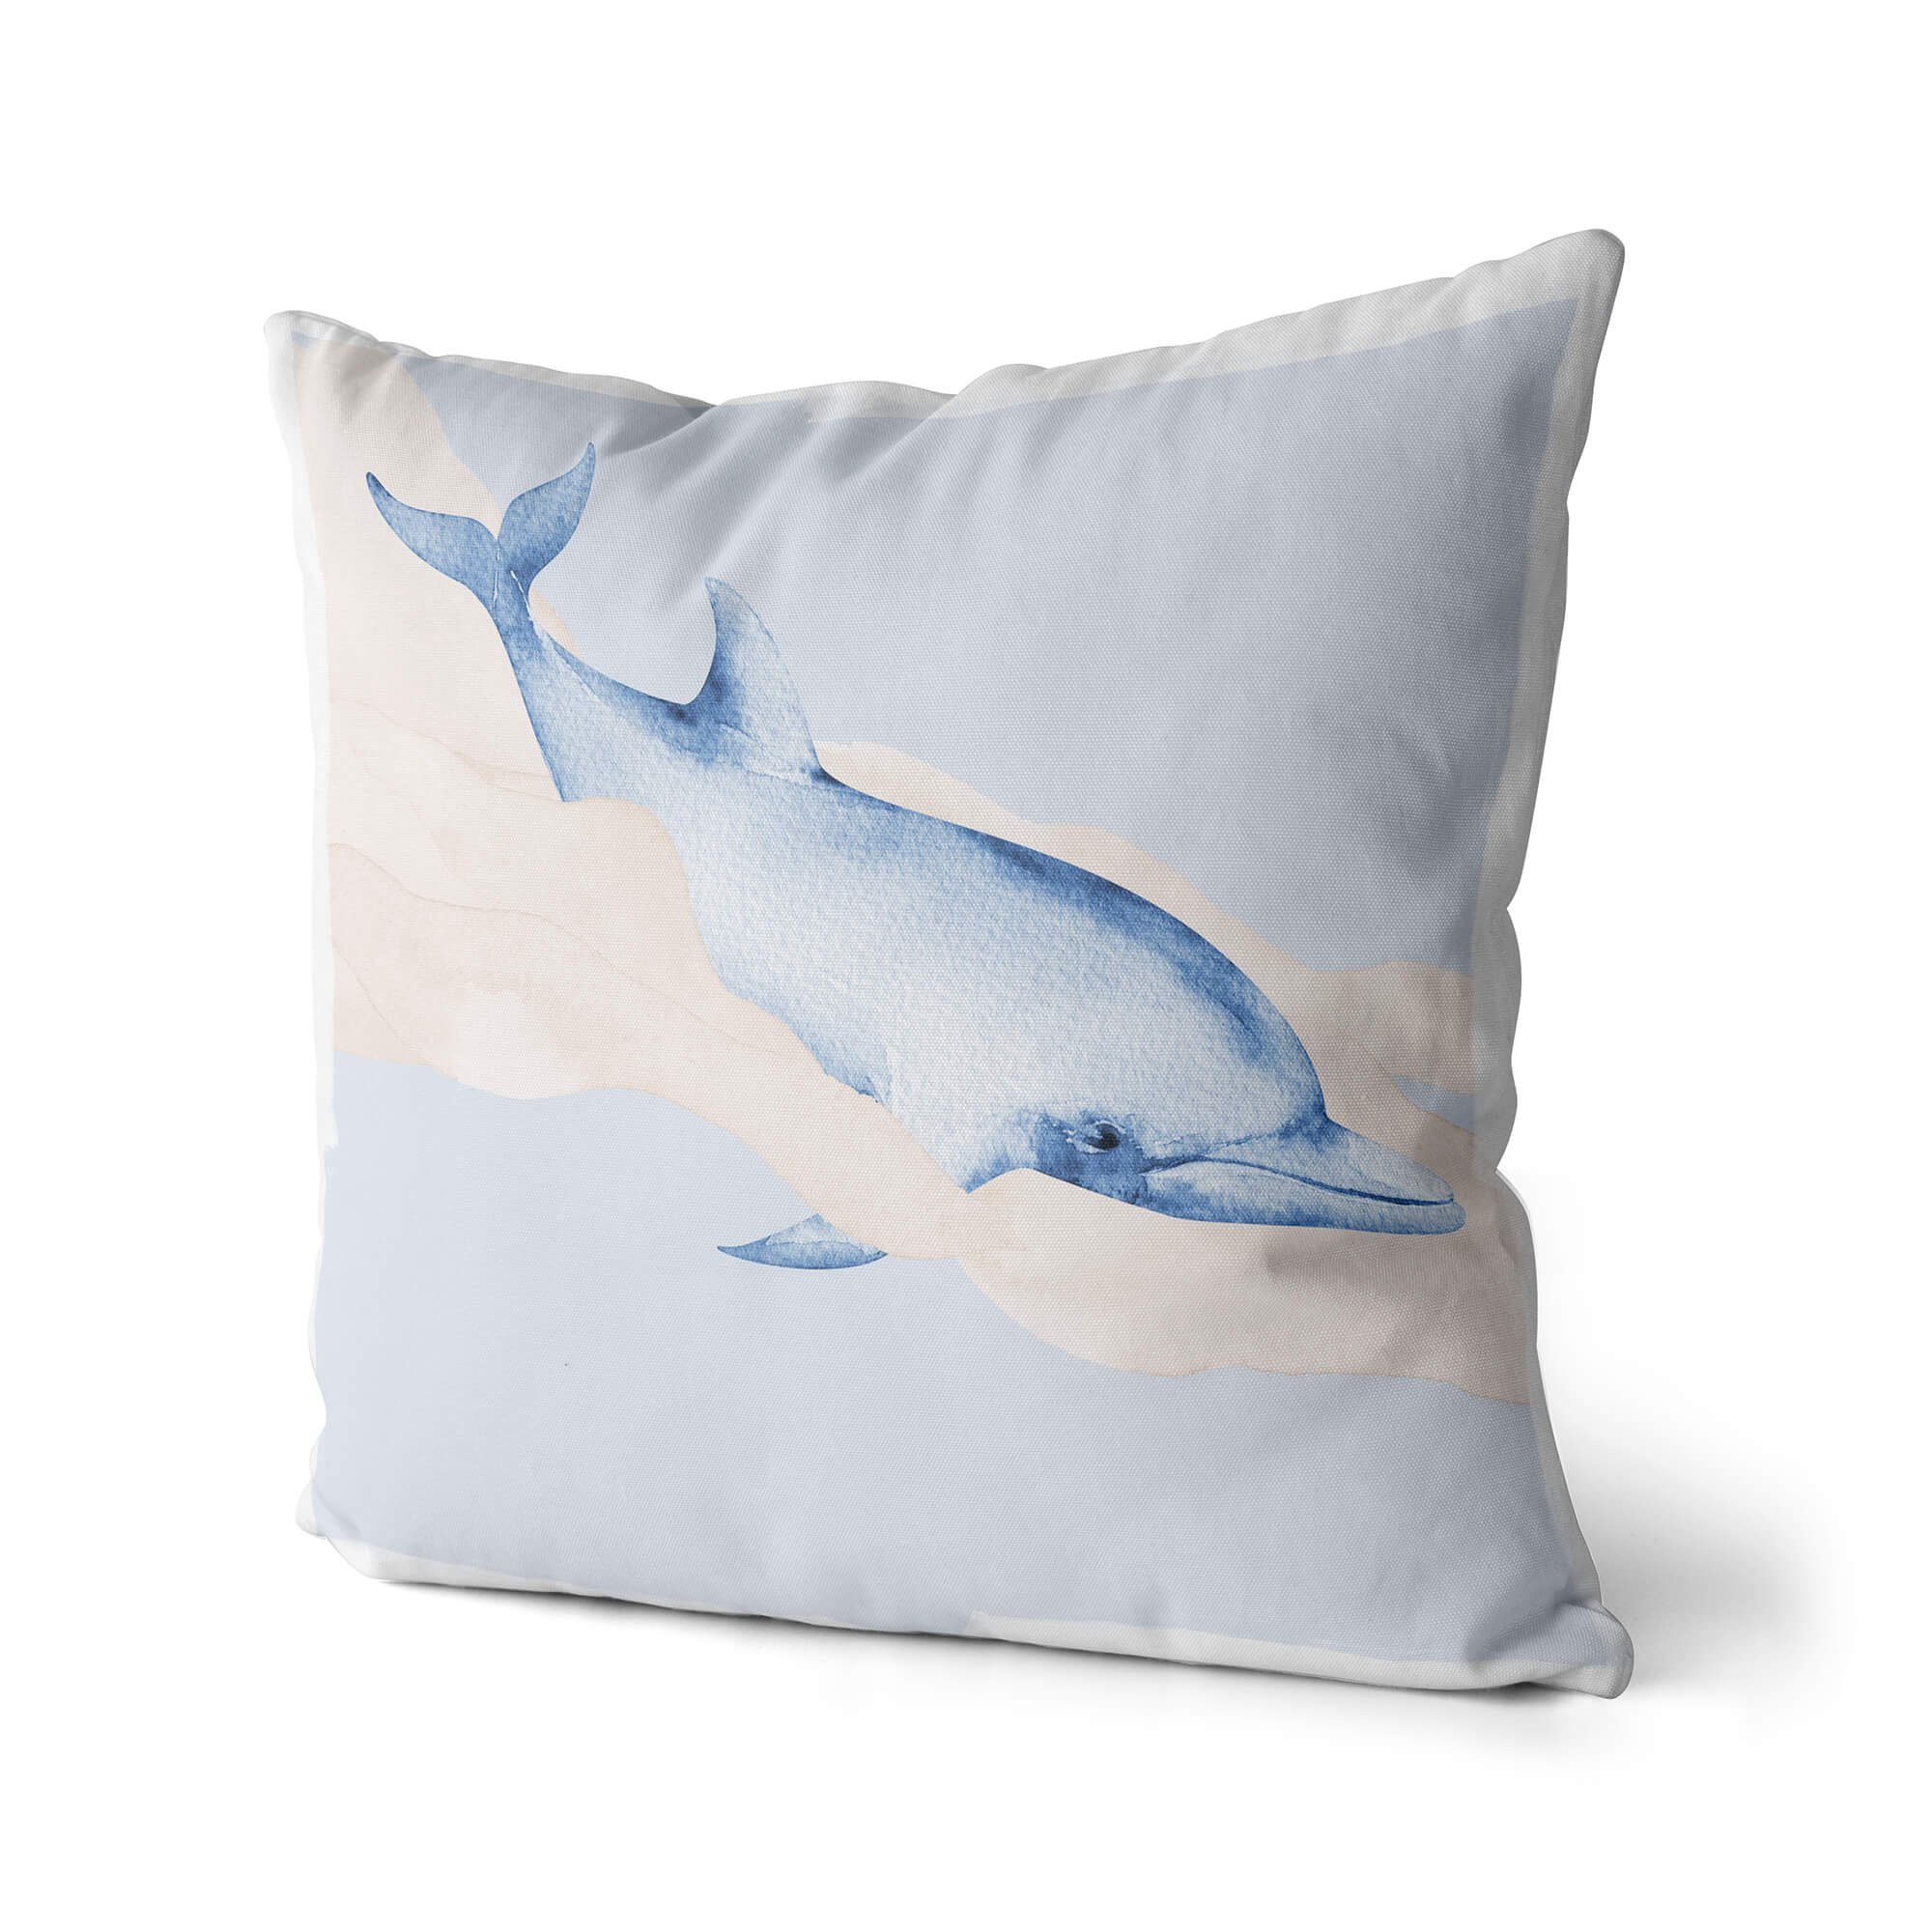 Sinus Art Dekokissen Dekokissen Kissen Pastellfarben Eauzone Delfin Wasserfarben Motiv Kunstvoll Dekorativ Weich Schön